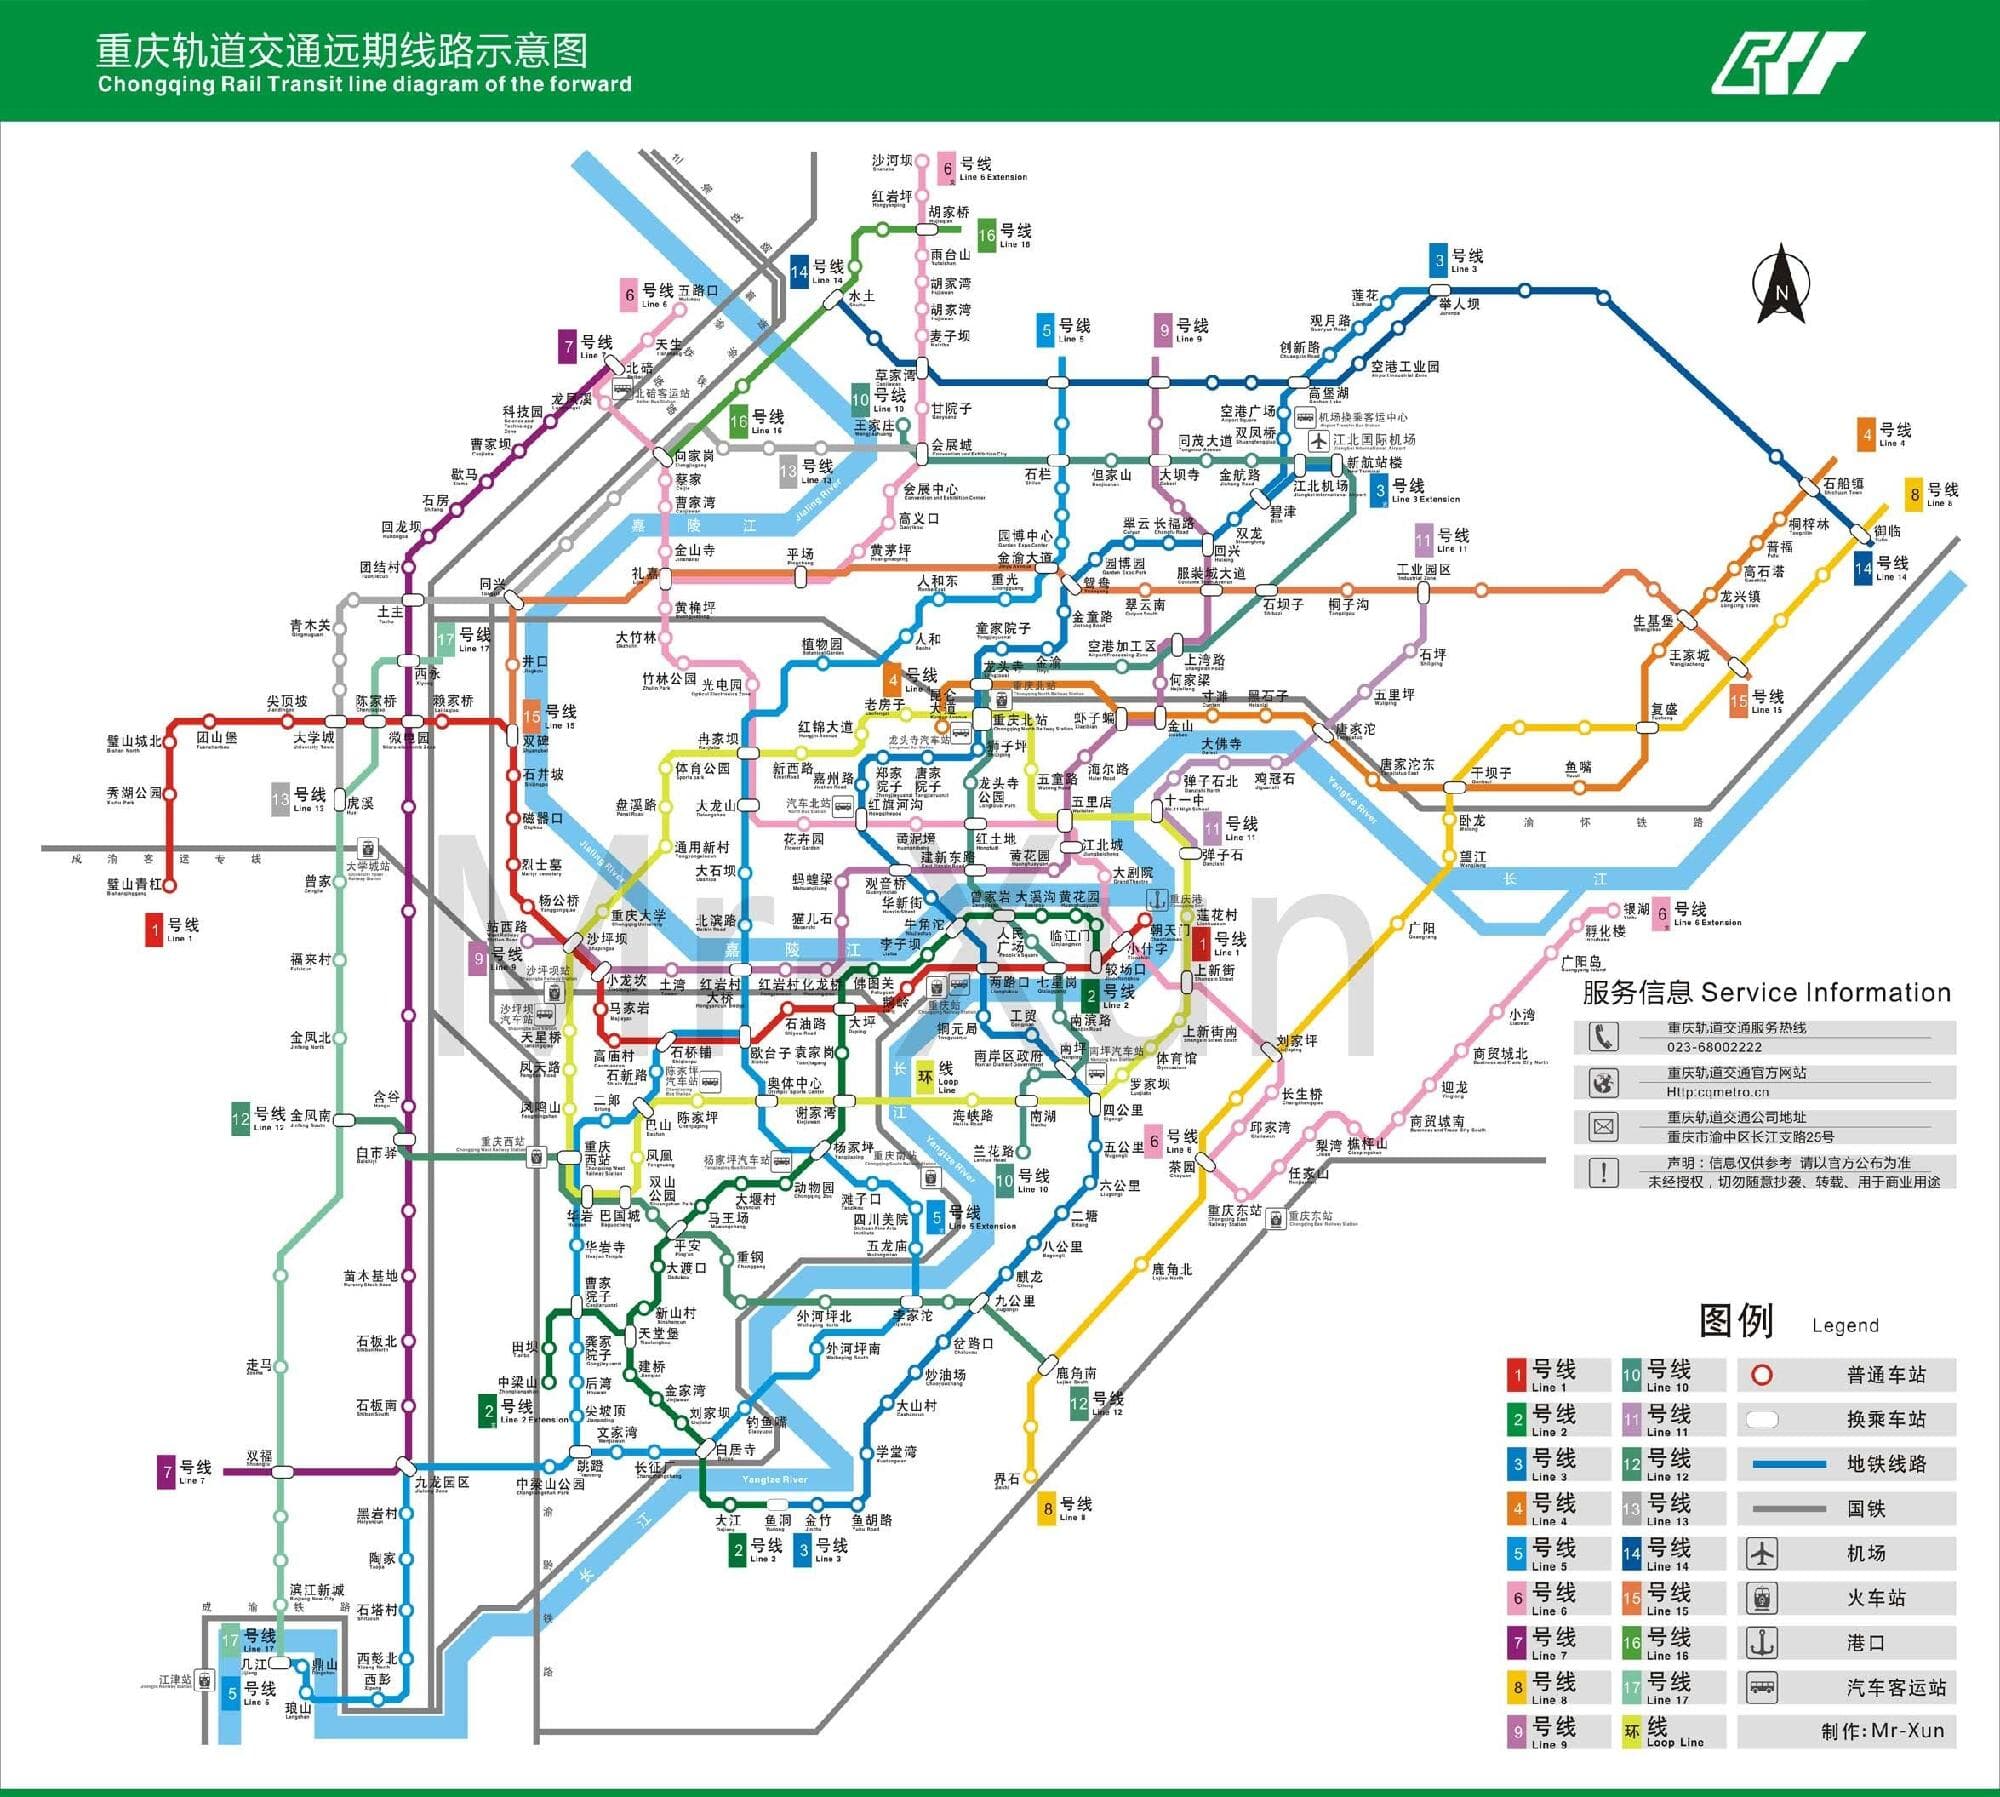 重庆18条轨道线规划图亮相 买哪些楼盘最方便-链家网重庆站